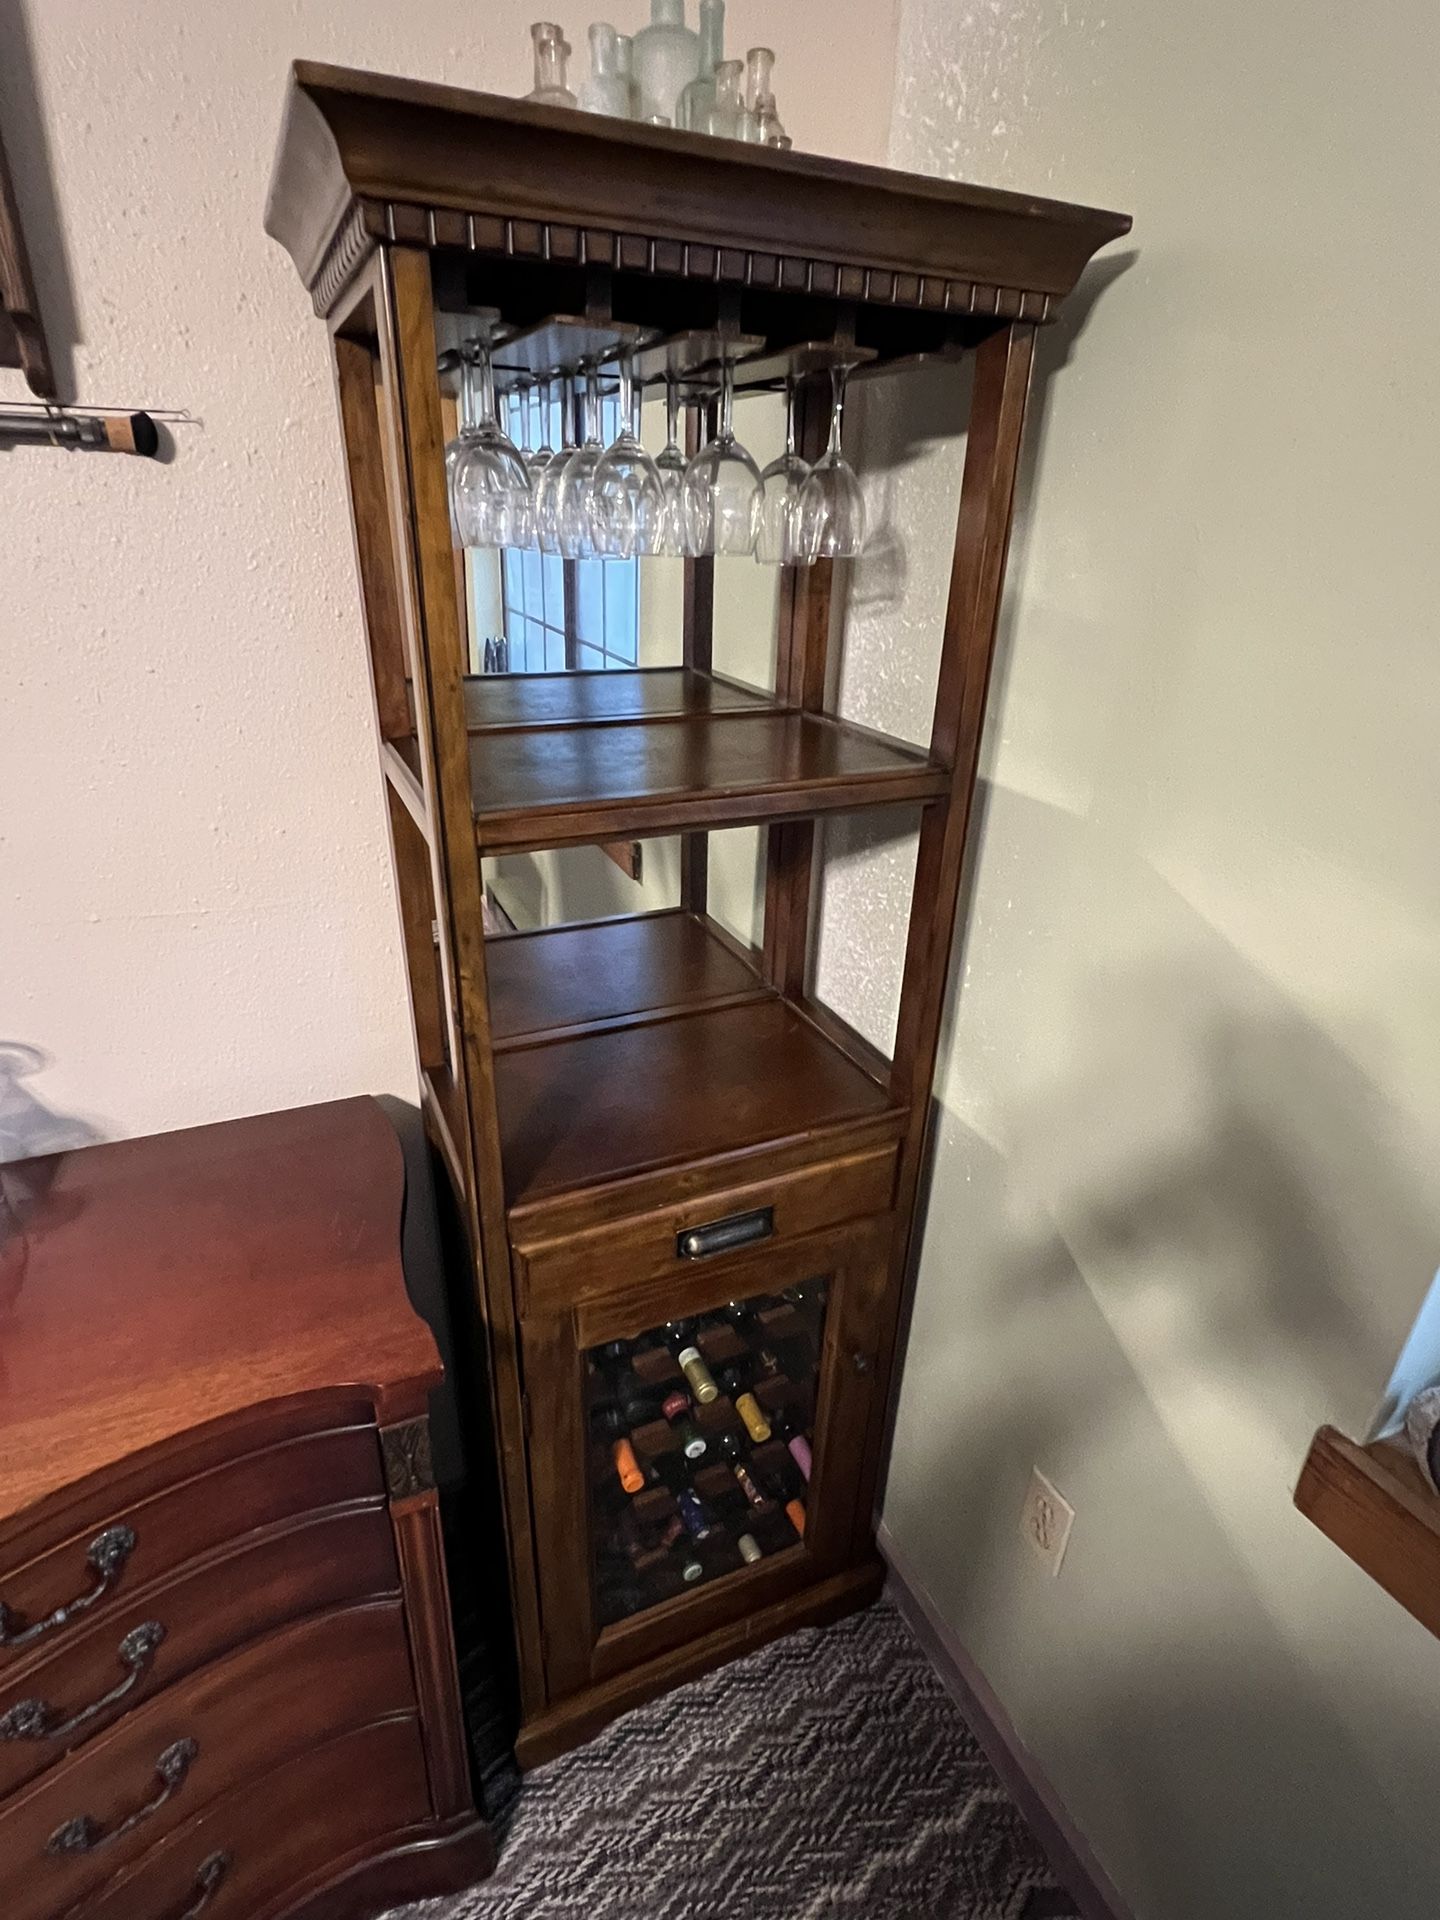 Vintage solid wood antique wine cabinet. 